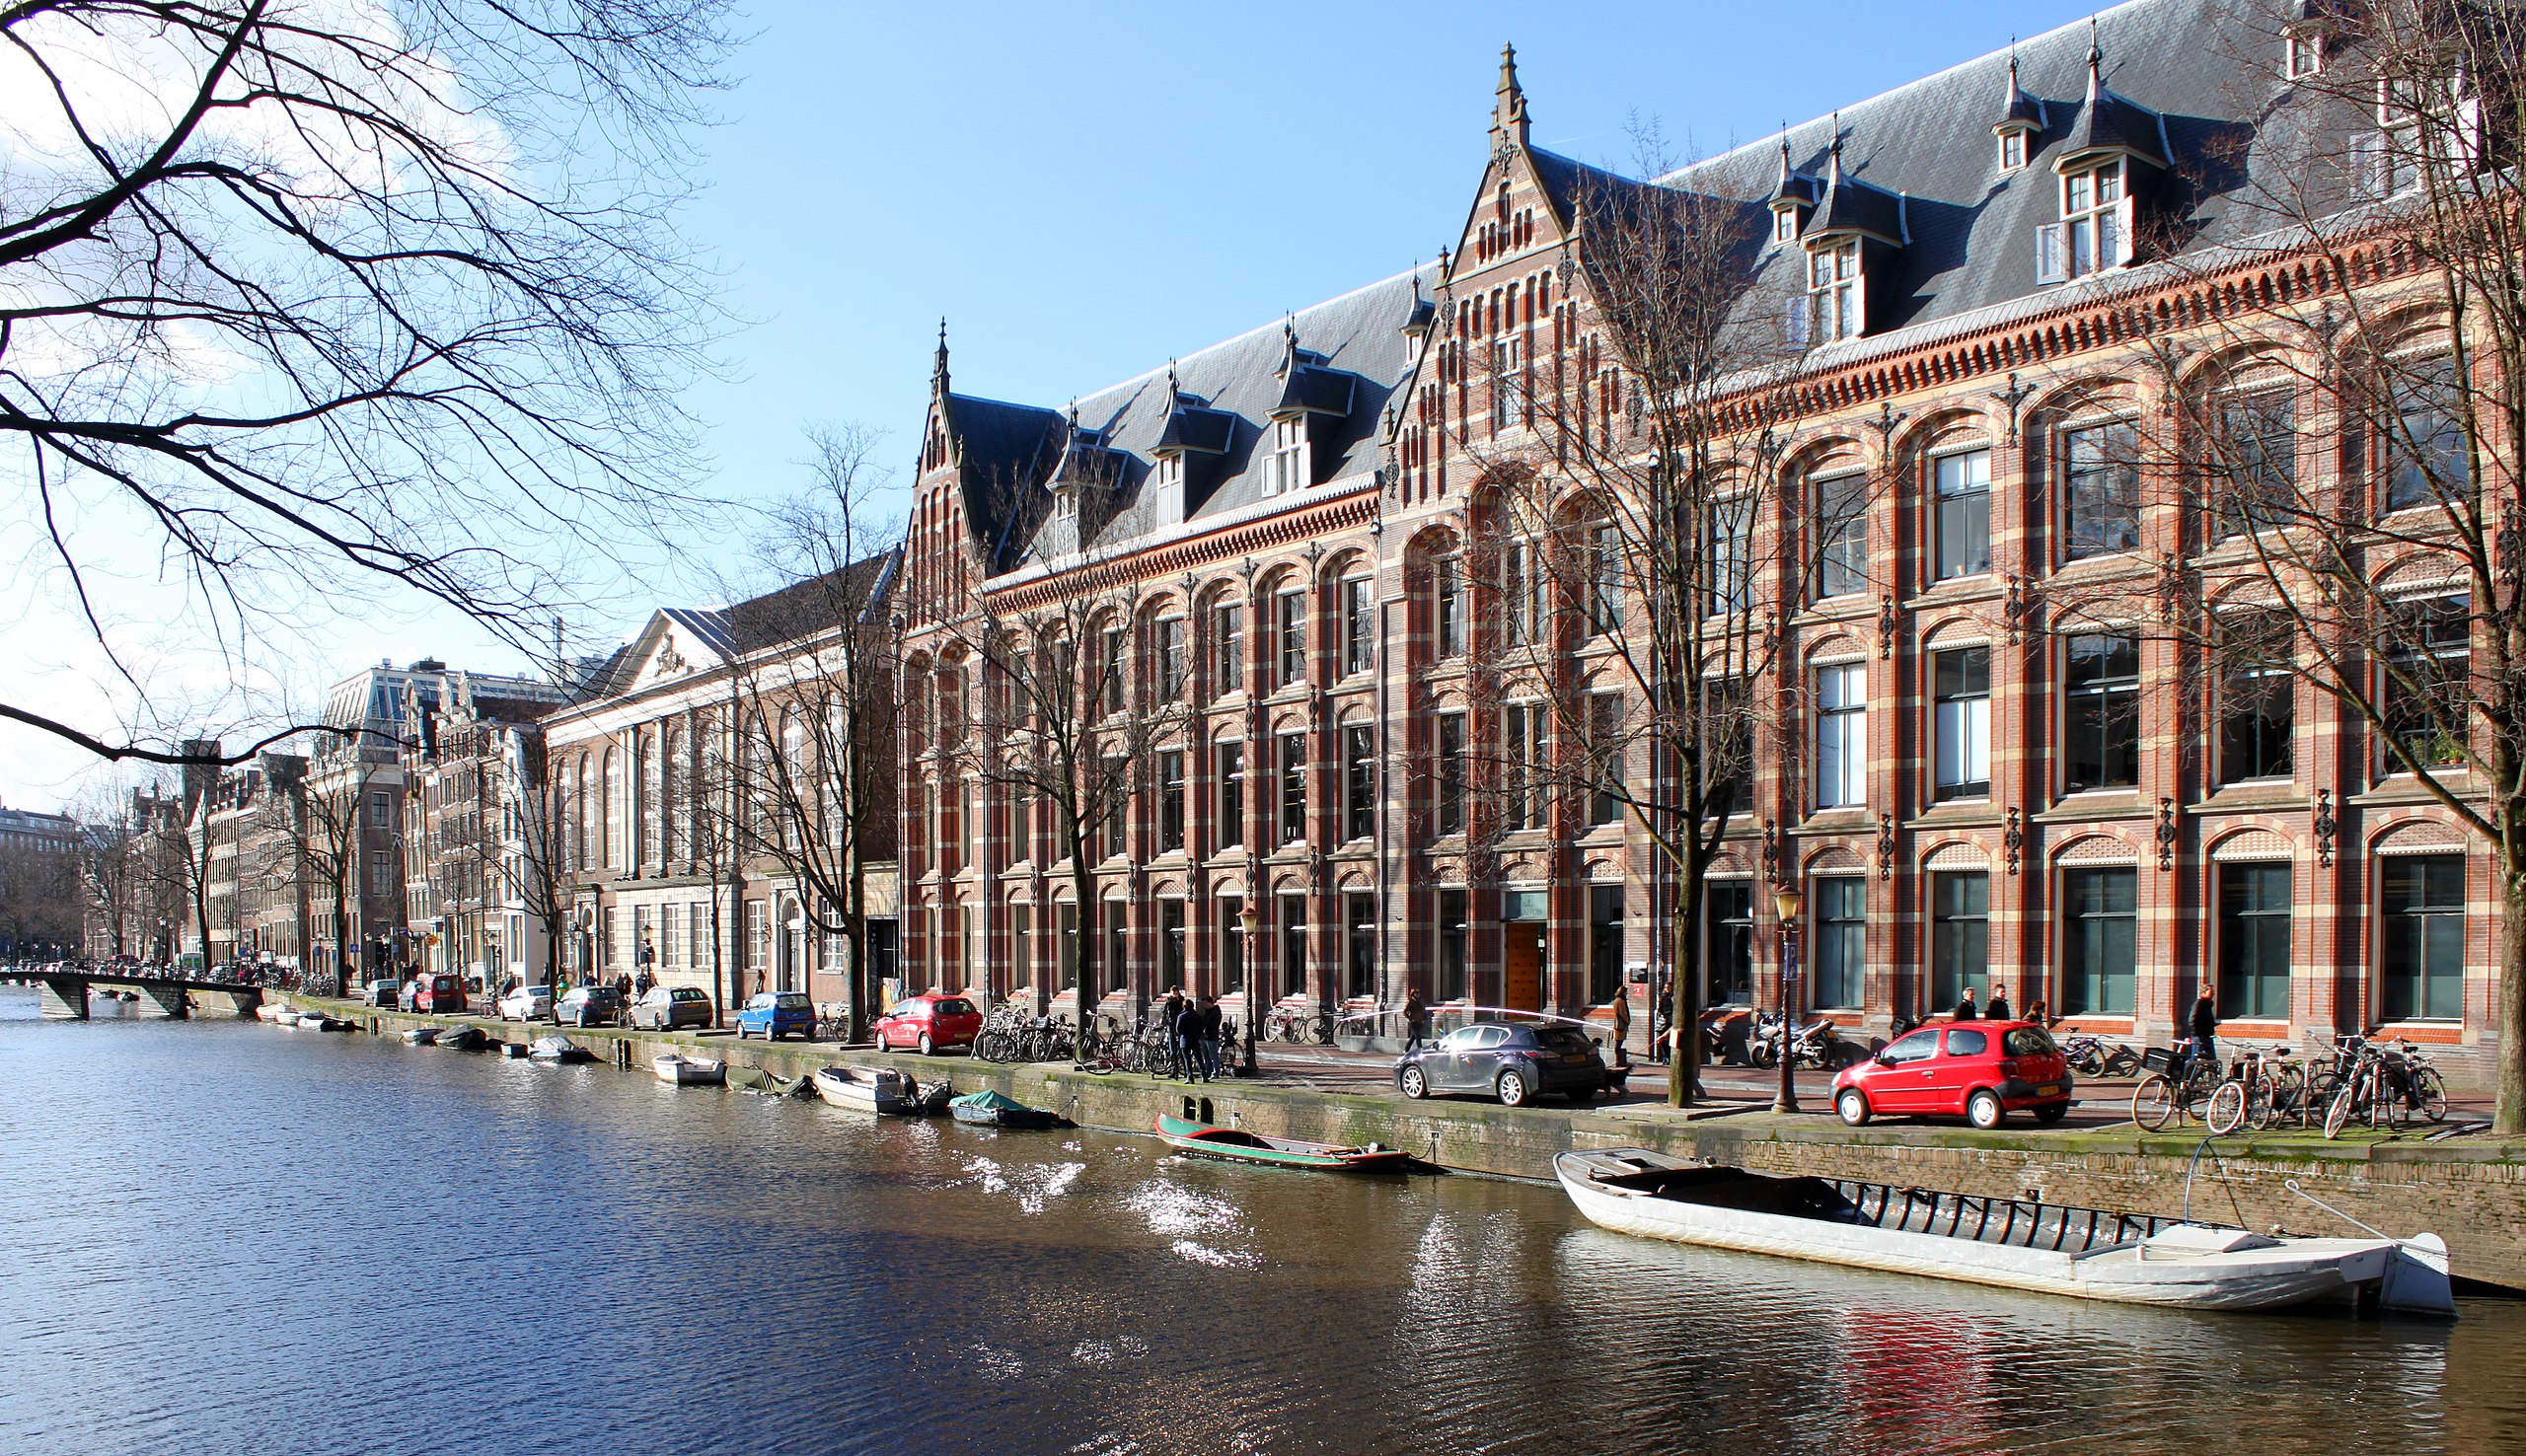 Trots Aan het leren snijden File:Amsterdam, Oost-Indisch Huis - panoramio.jpg - Wikimedia Commons